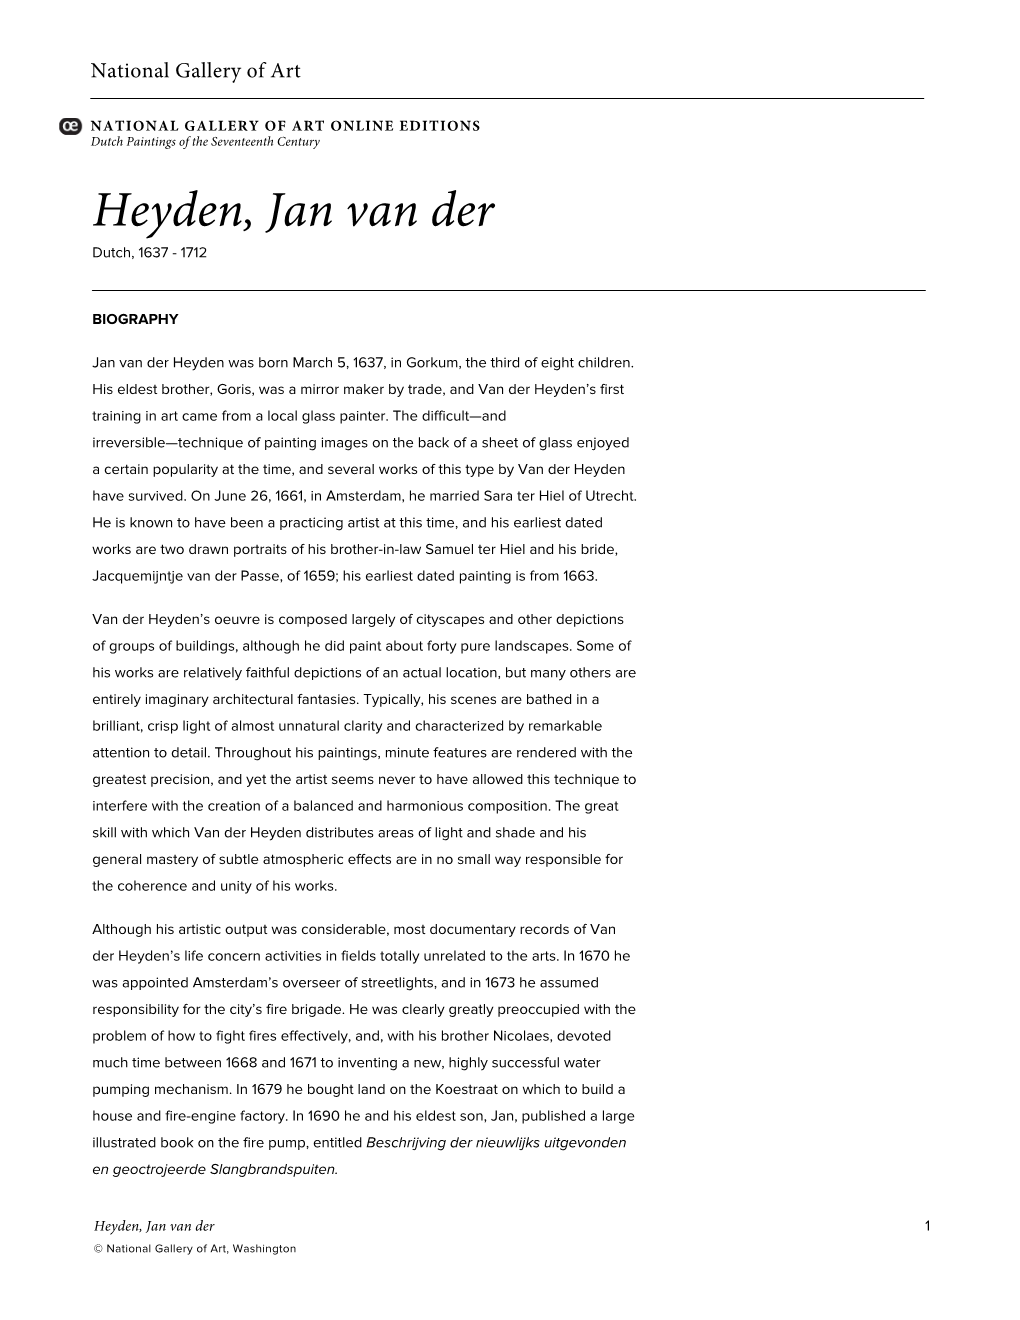 Heyden, Jan Van Der Dutch, 1637 - 1712